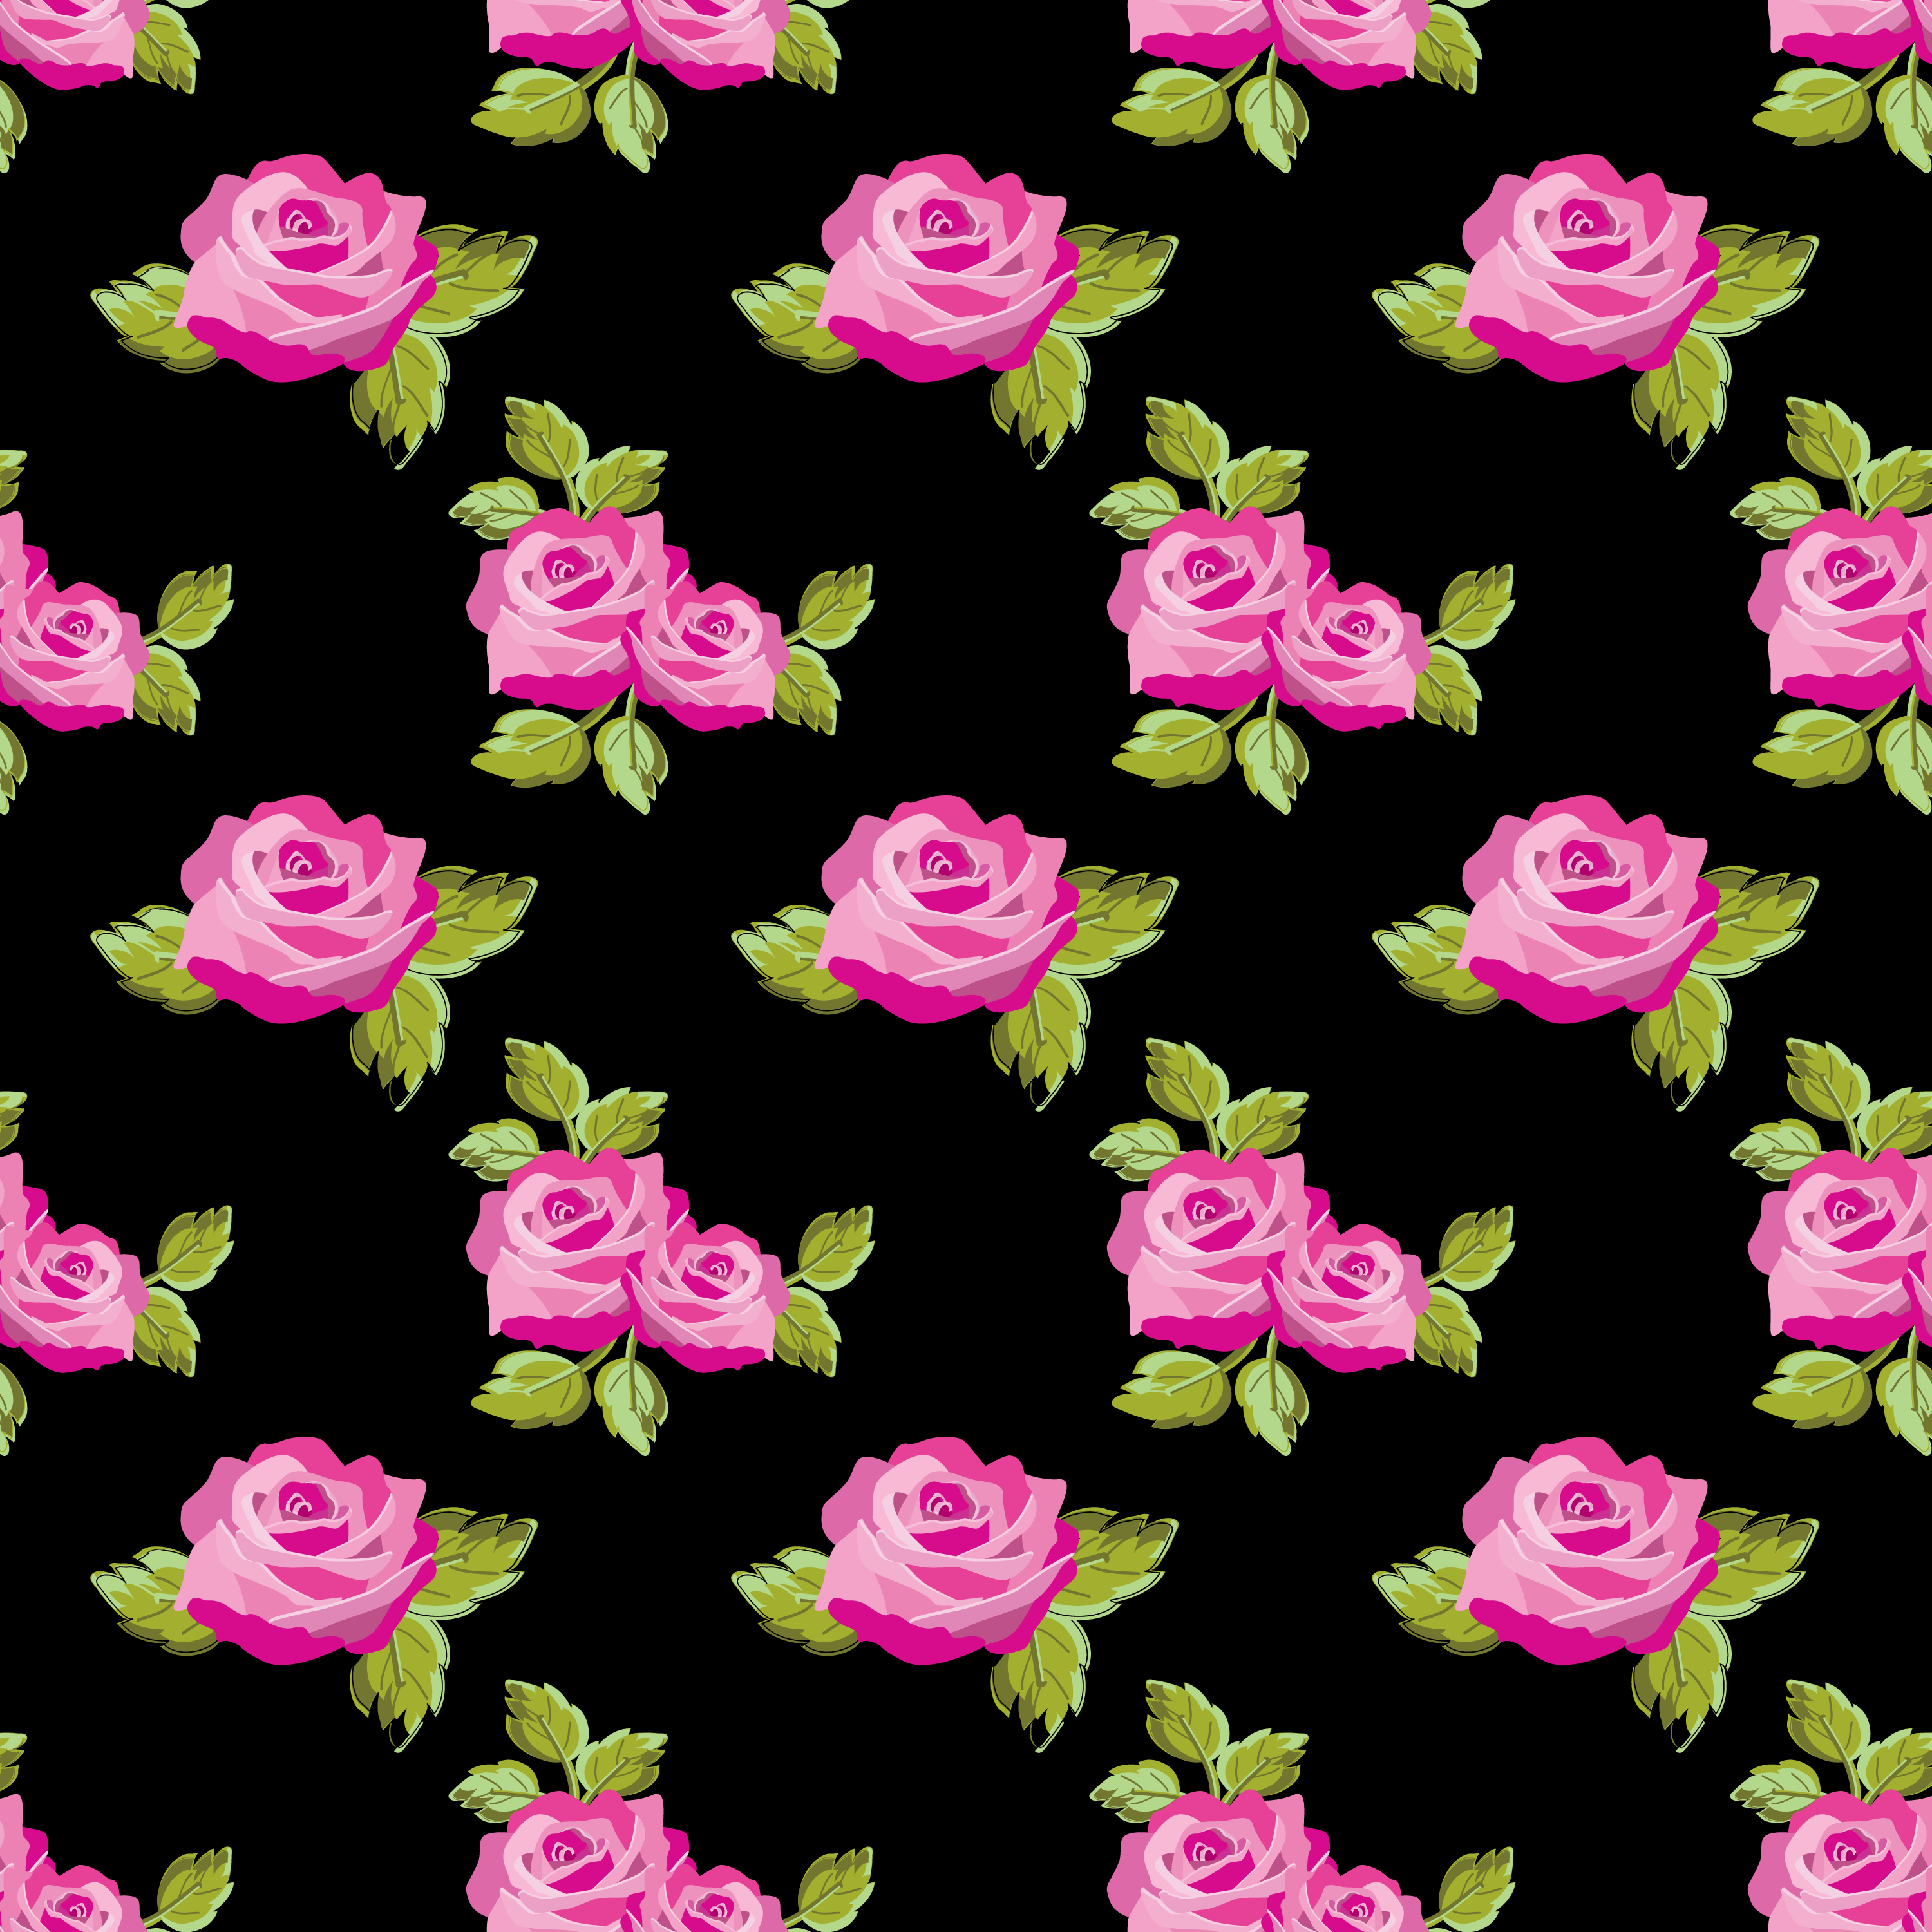 壁紙 背景イラスト 花の模様 柄 パターン No 231 赤いバラ 緑葉